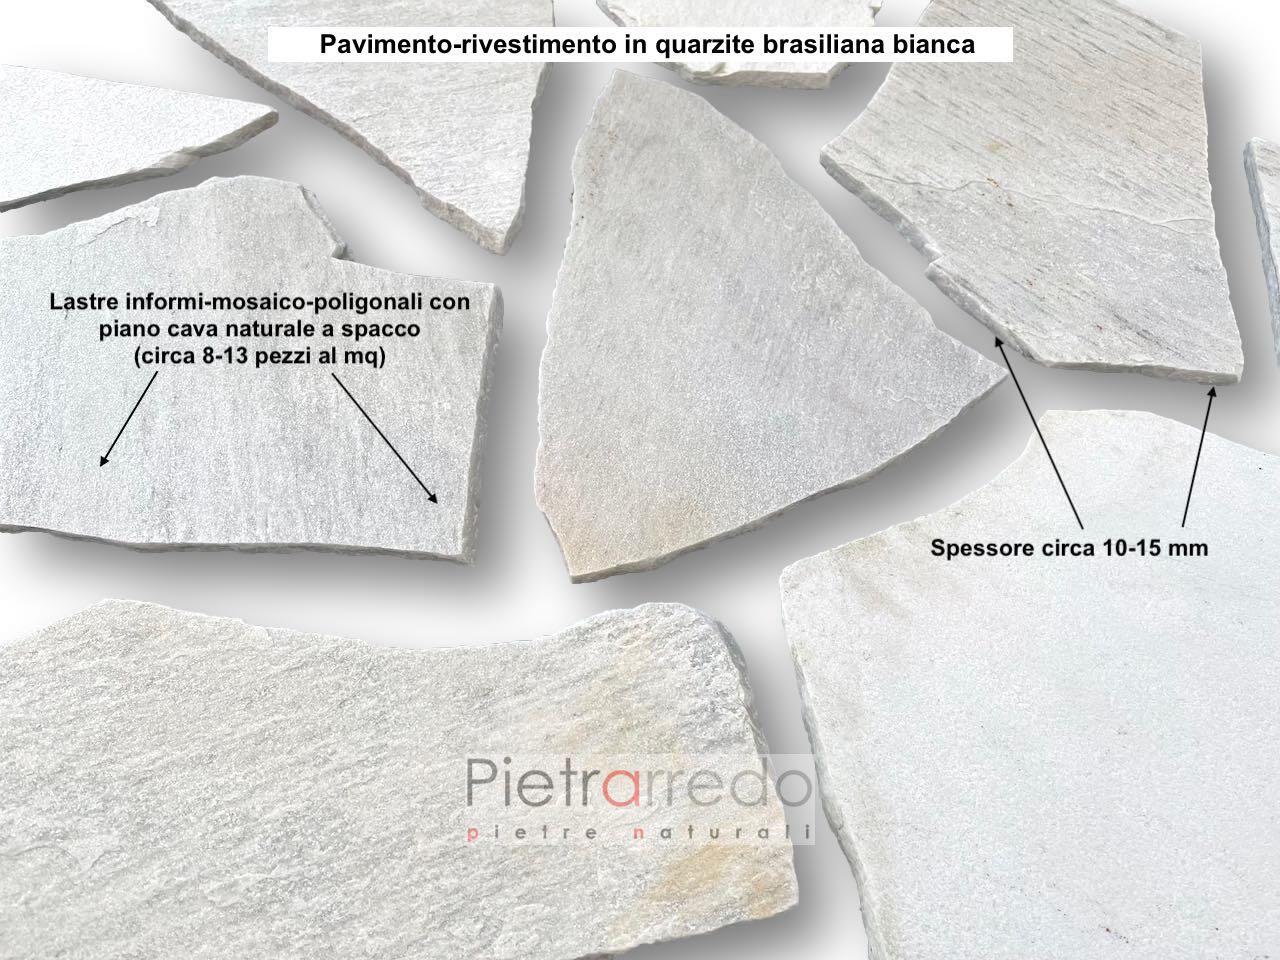 lastrame mosaico opus pavimenti e rivestimenti in pietra quarzite bianca brasiliana pietrarredo prezzo palladiana